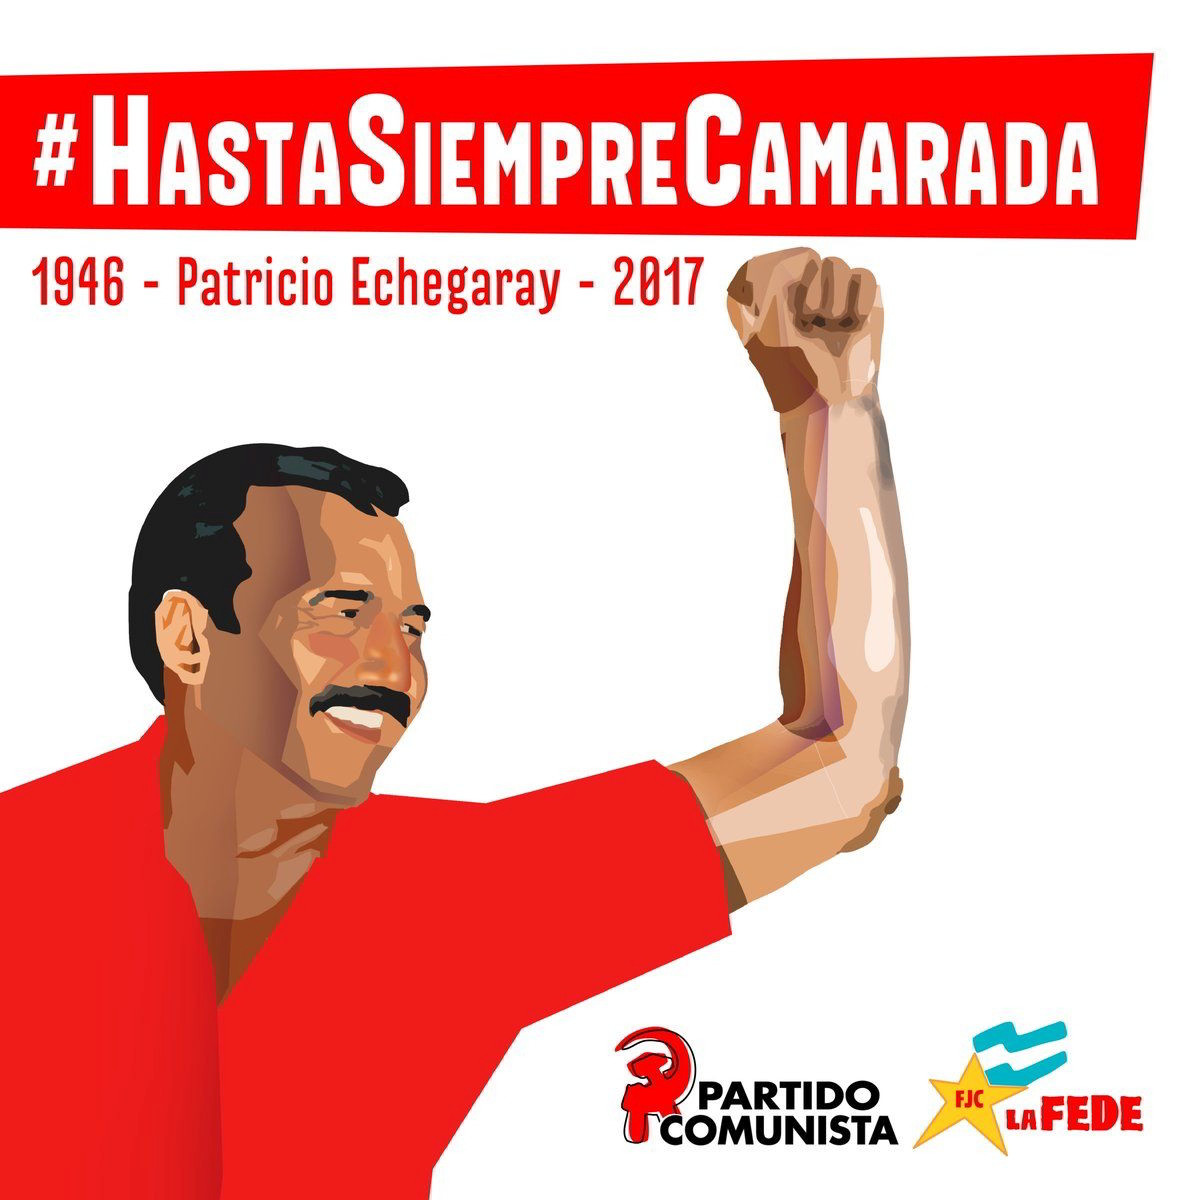 hasta siempre camarada - Hasta Siempre Camarada - Argentinien, Kommunistische Parteien, Lateinamerika - Internationales